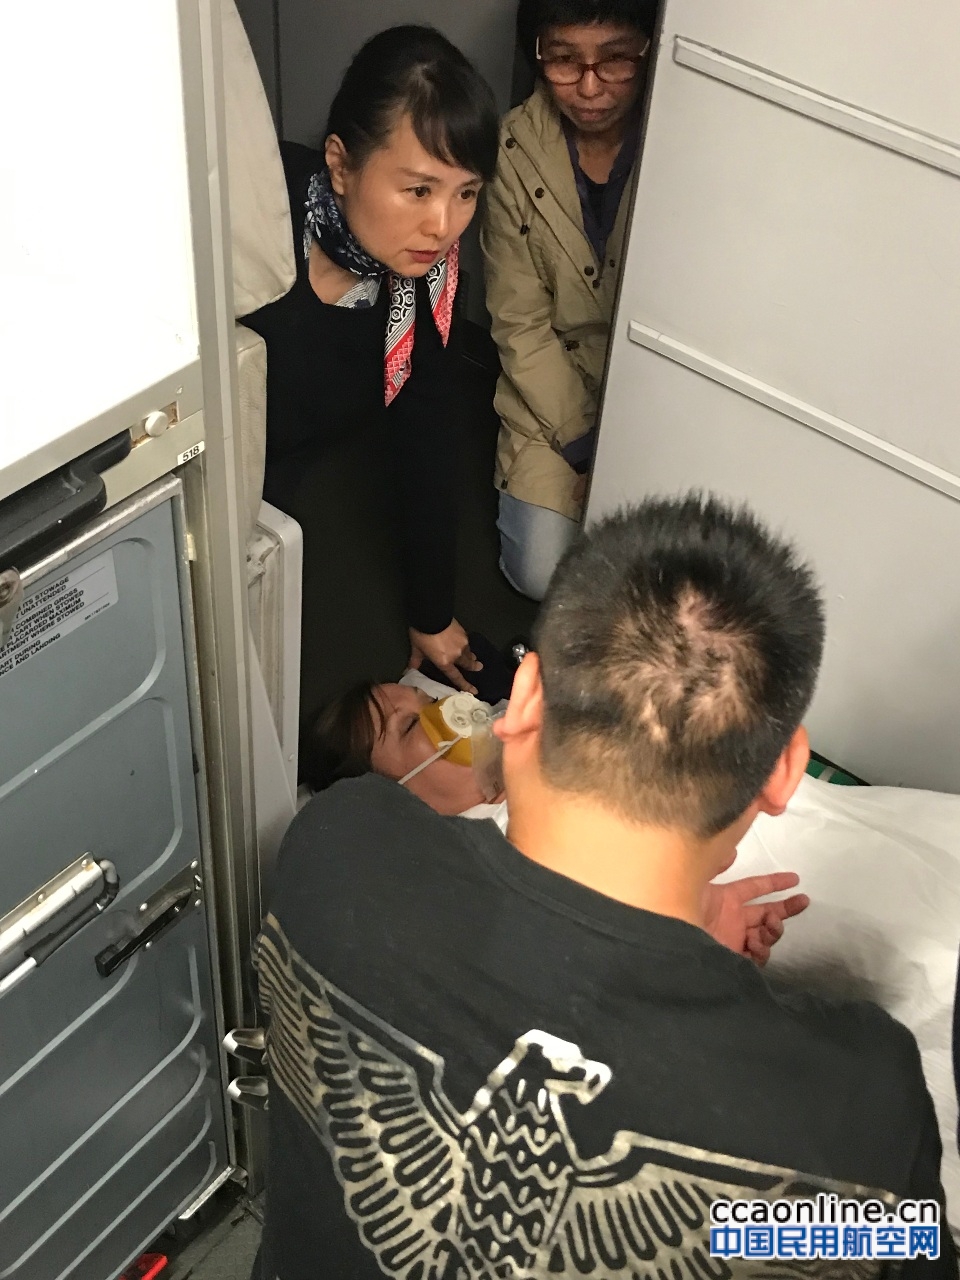 太平洋上空外籍旅客突发病 东航乘务全力救护获赞誉